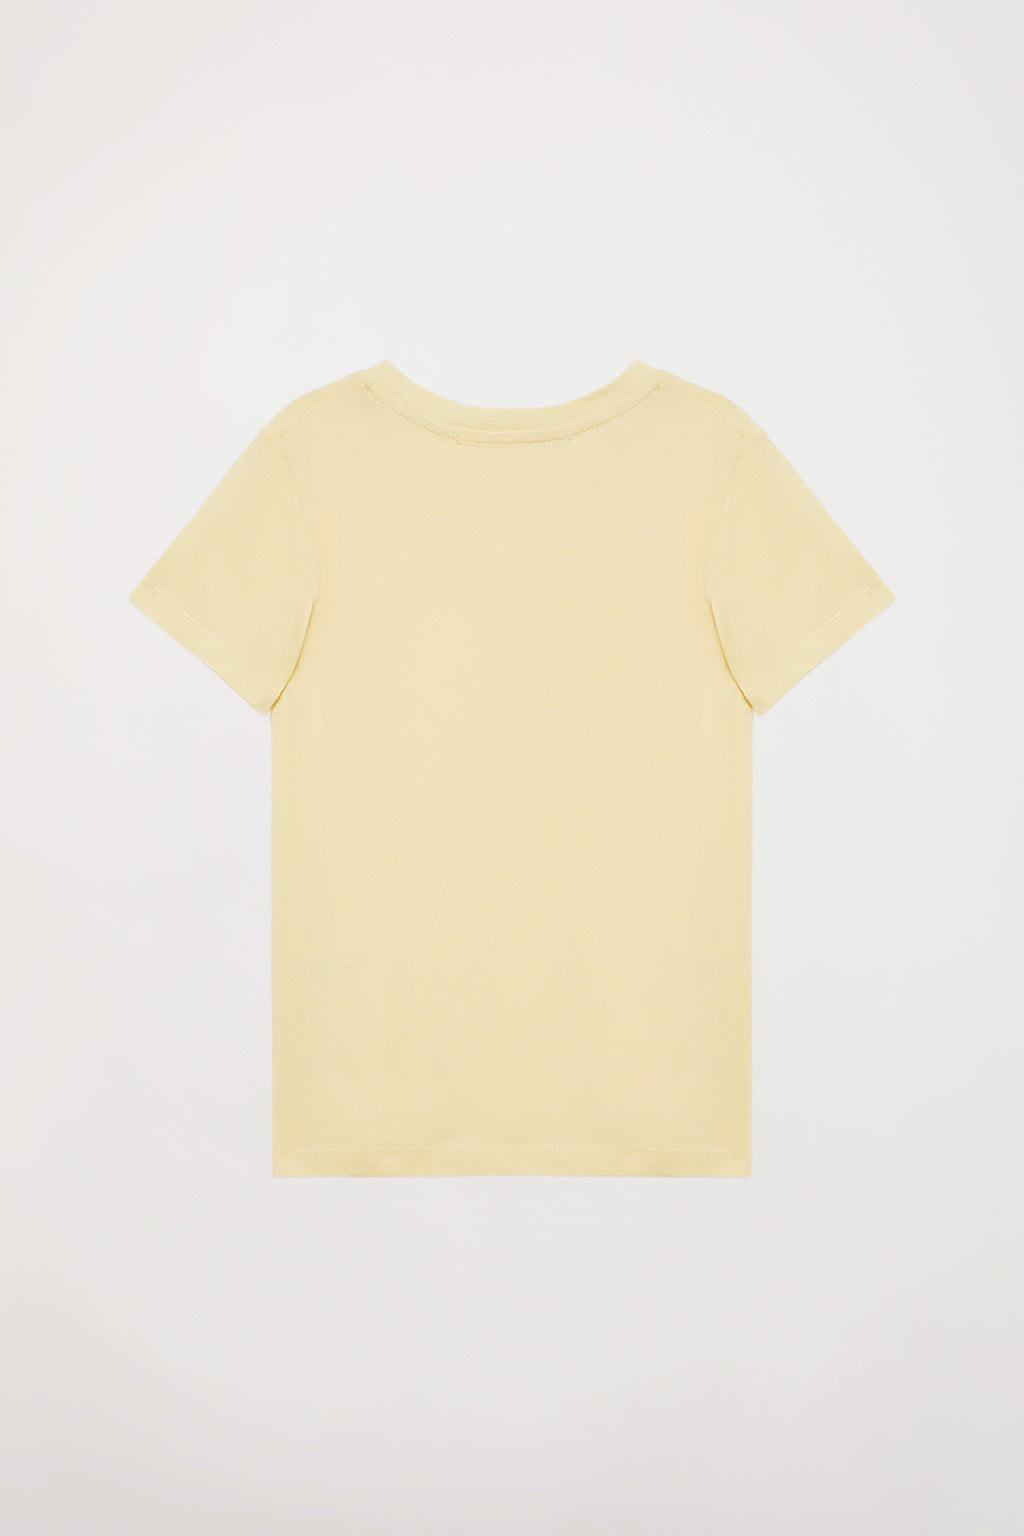 Camiseta Amarilla Niña Polaca - Subterfuge Shop